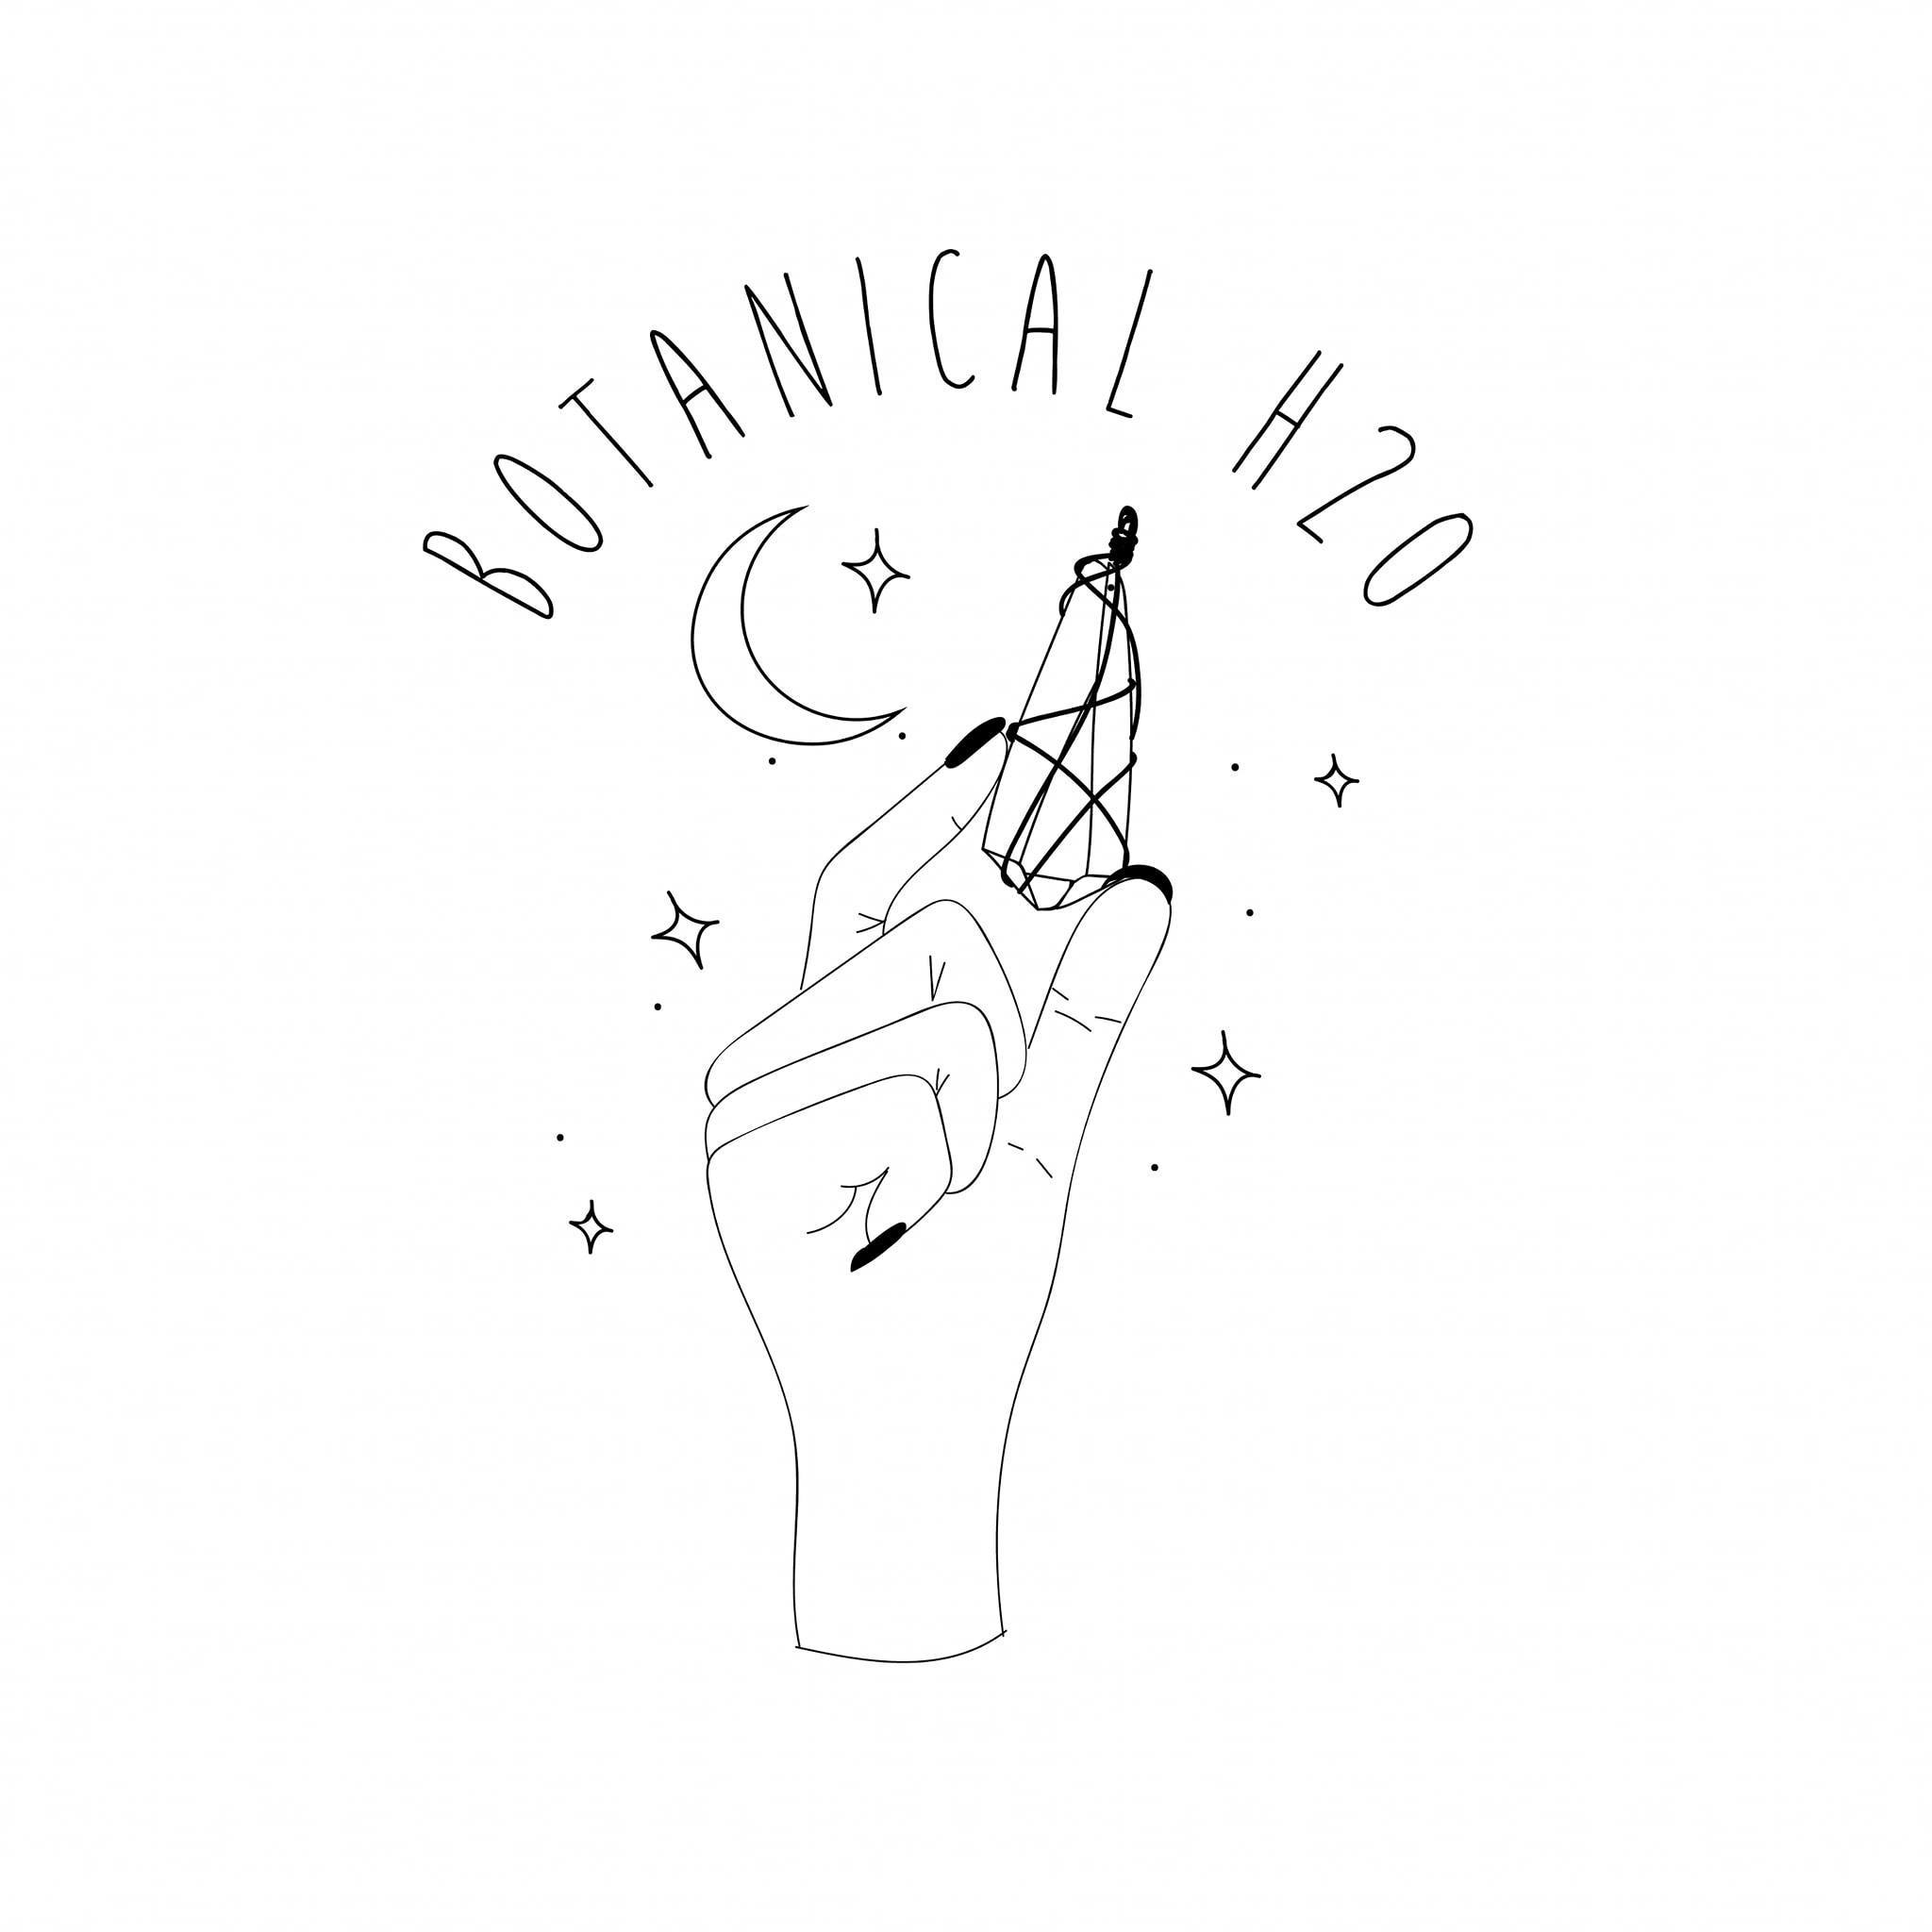 Company logo of Botanical H2o